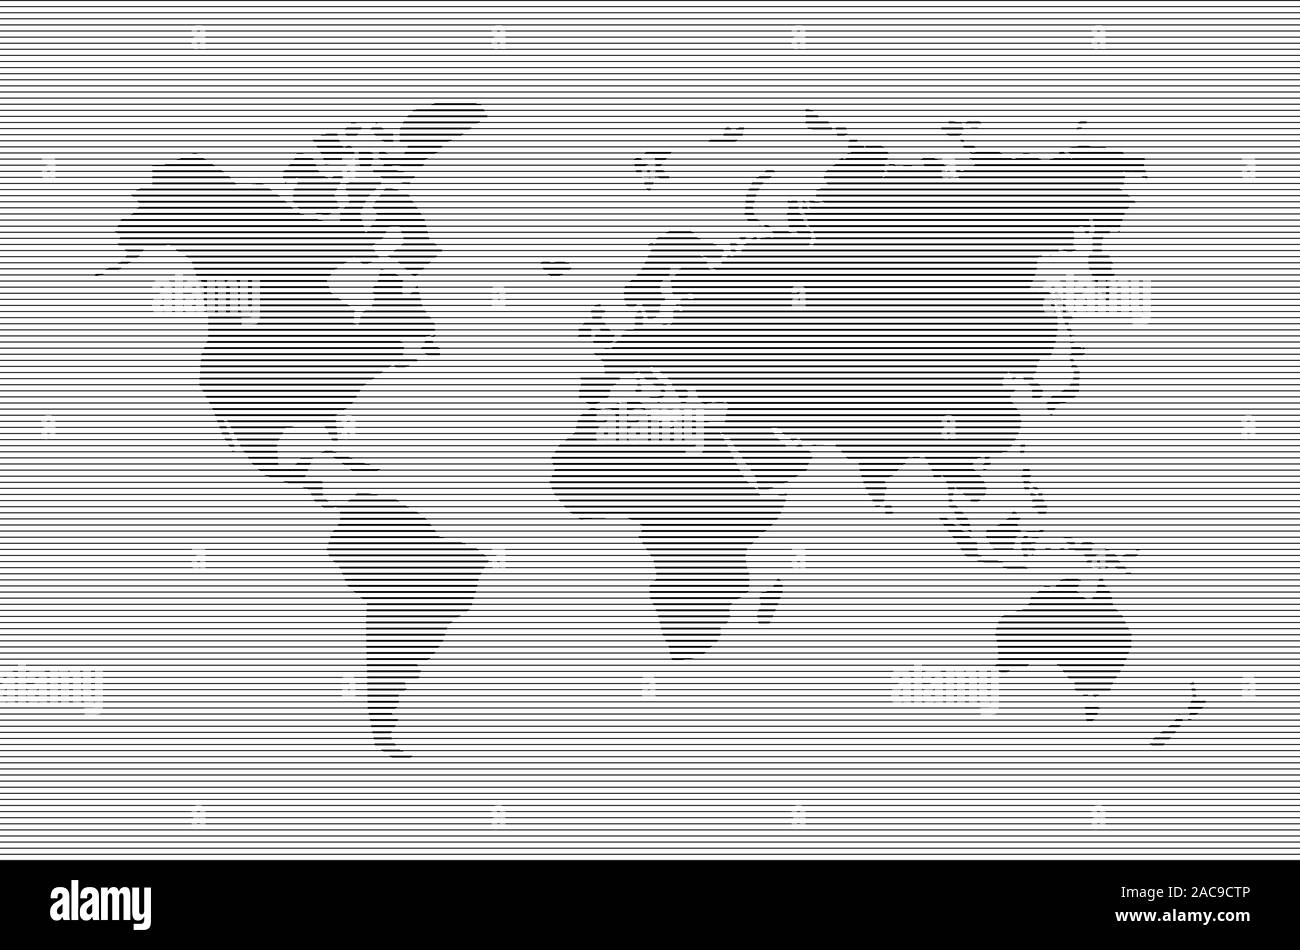 Carte du monde abstrait en lignes horizontales. La cartographie vectorielle avec rayures noires pays illustration Illustration de Vecteur